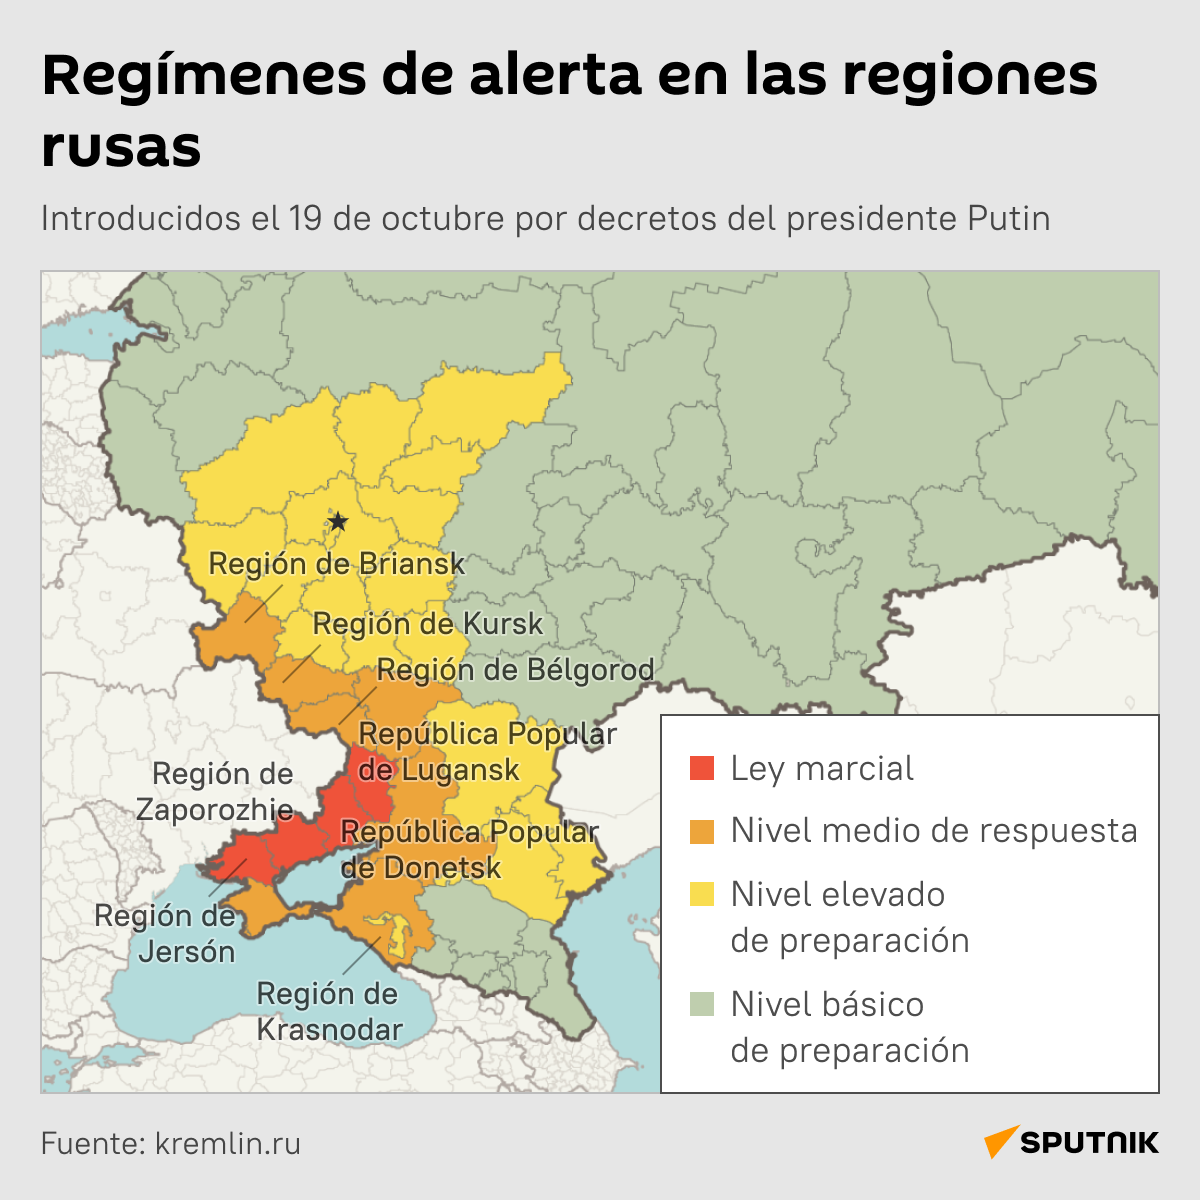 Regímenes de alerta en las regiones rusas - Sputnik Mundo